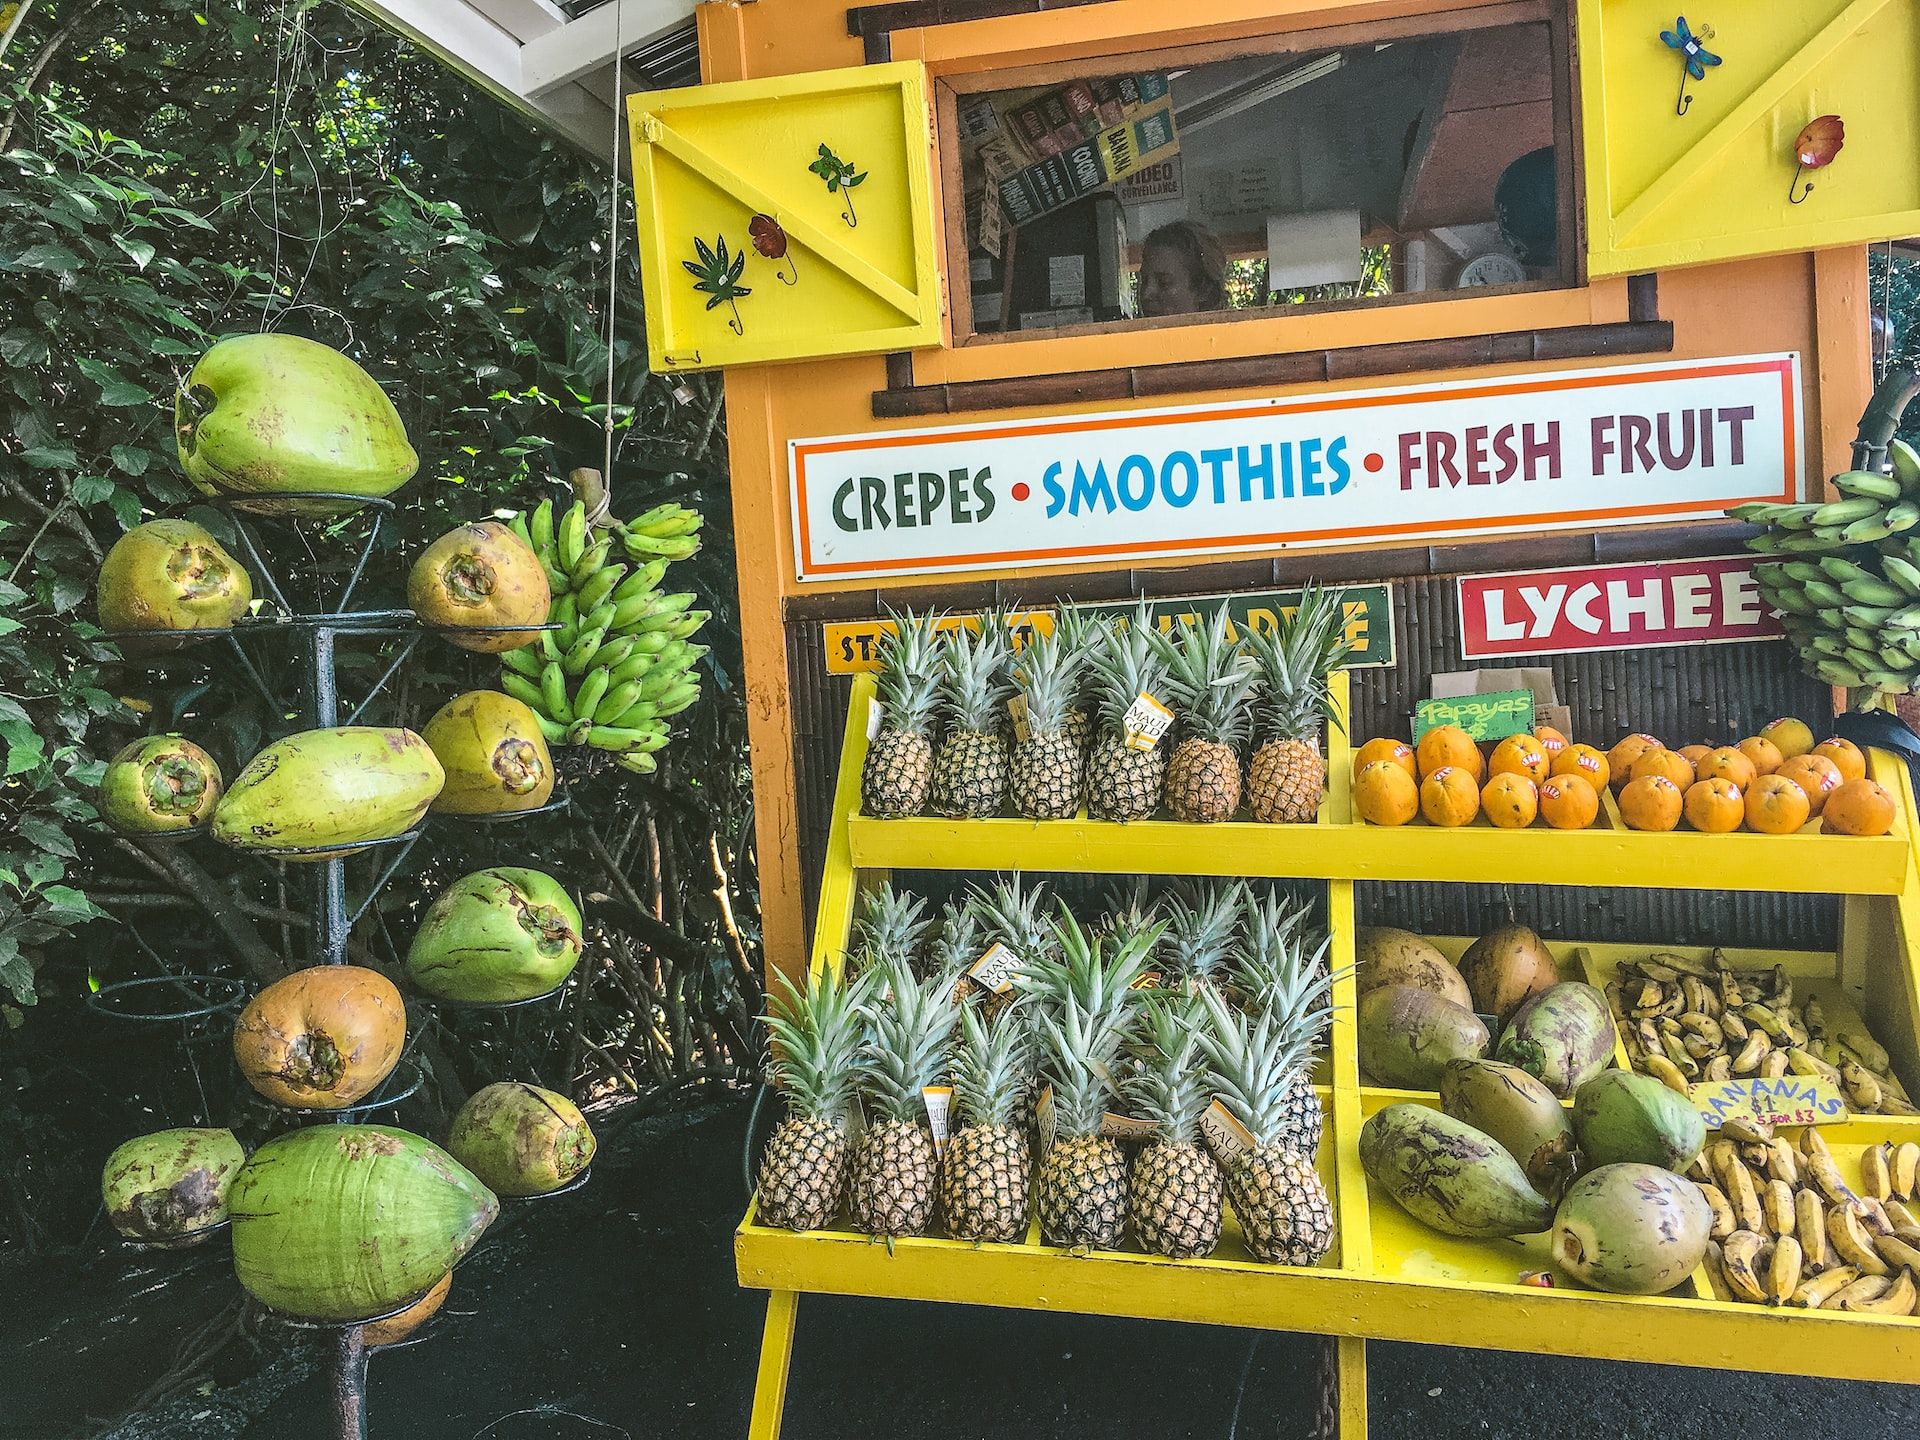 Uma barraca de comida em uma das paradas gastronômicas da Hana Highway, com cocos frescos, crepes, smoothies e frutas